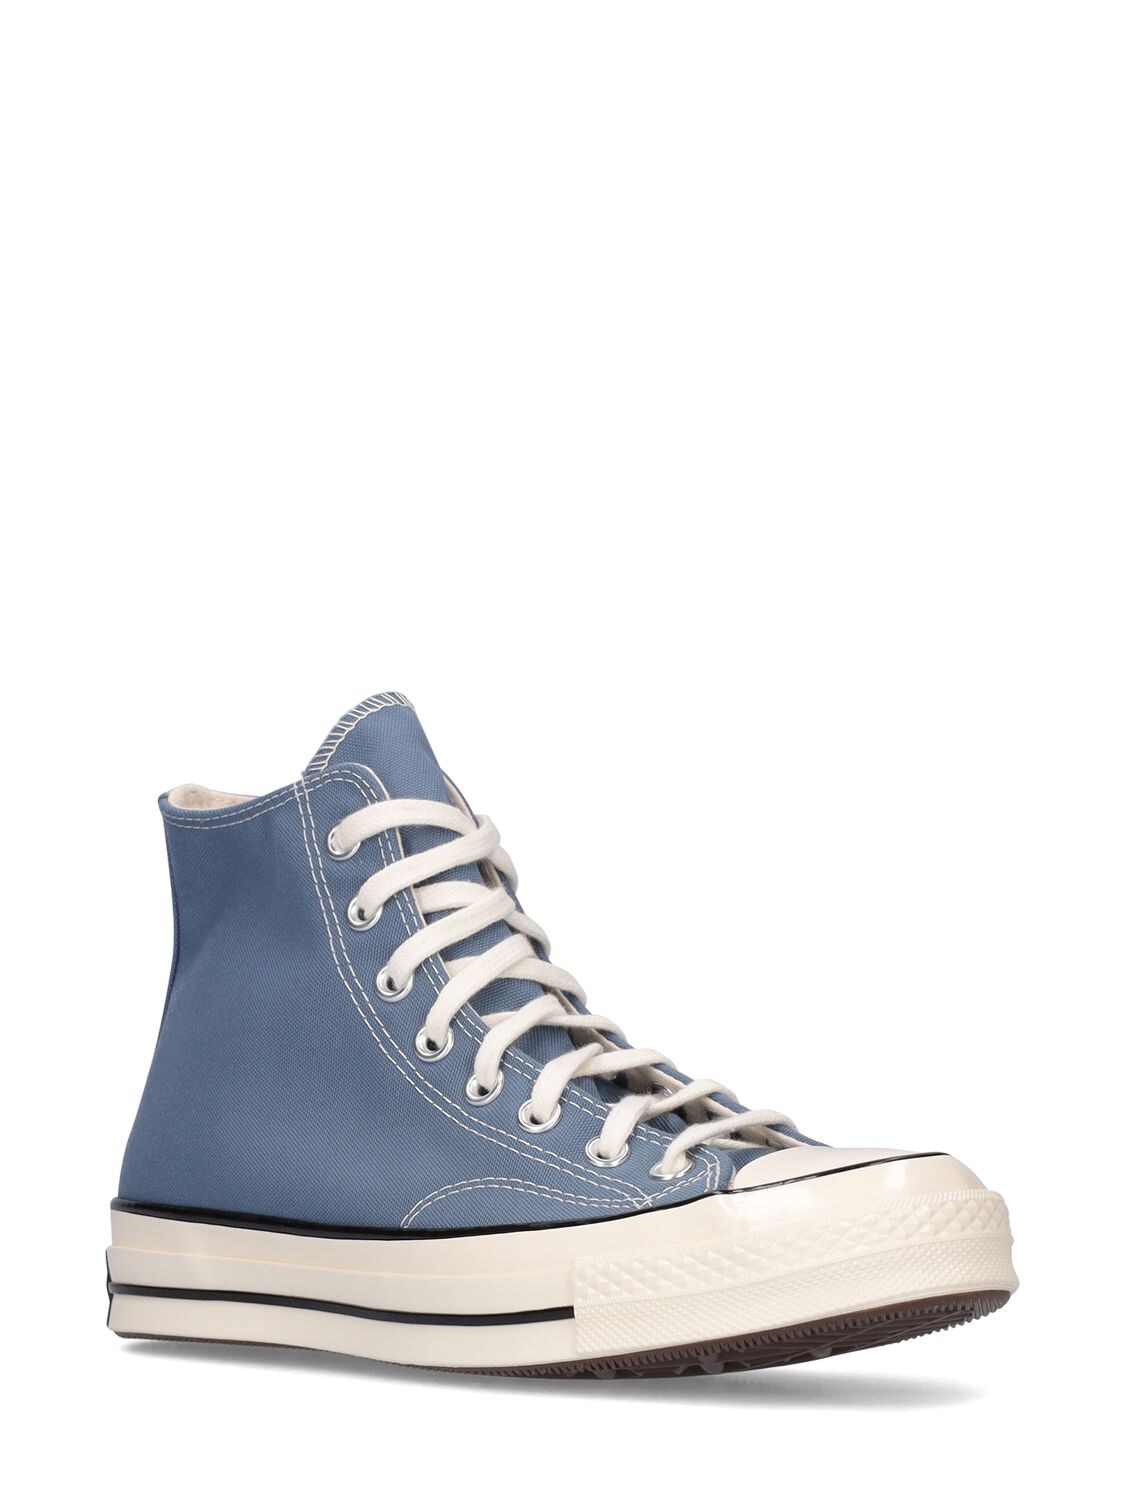 Converse Chuck 70 Powder Blue Canvas Sneaker - Chuck 70 | ModeSens